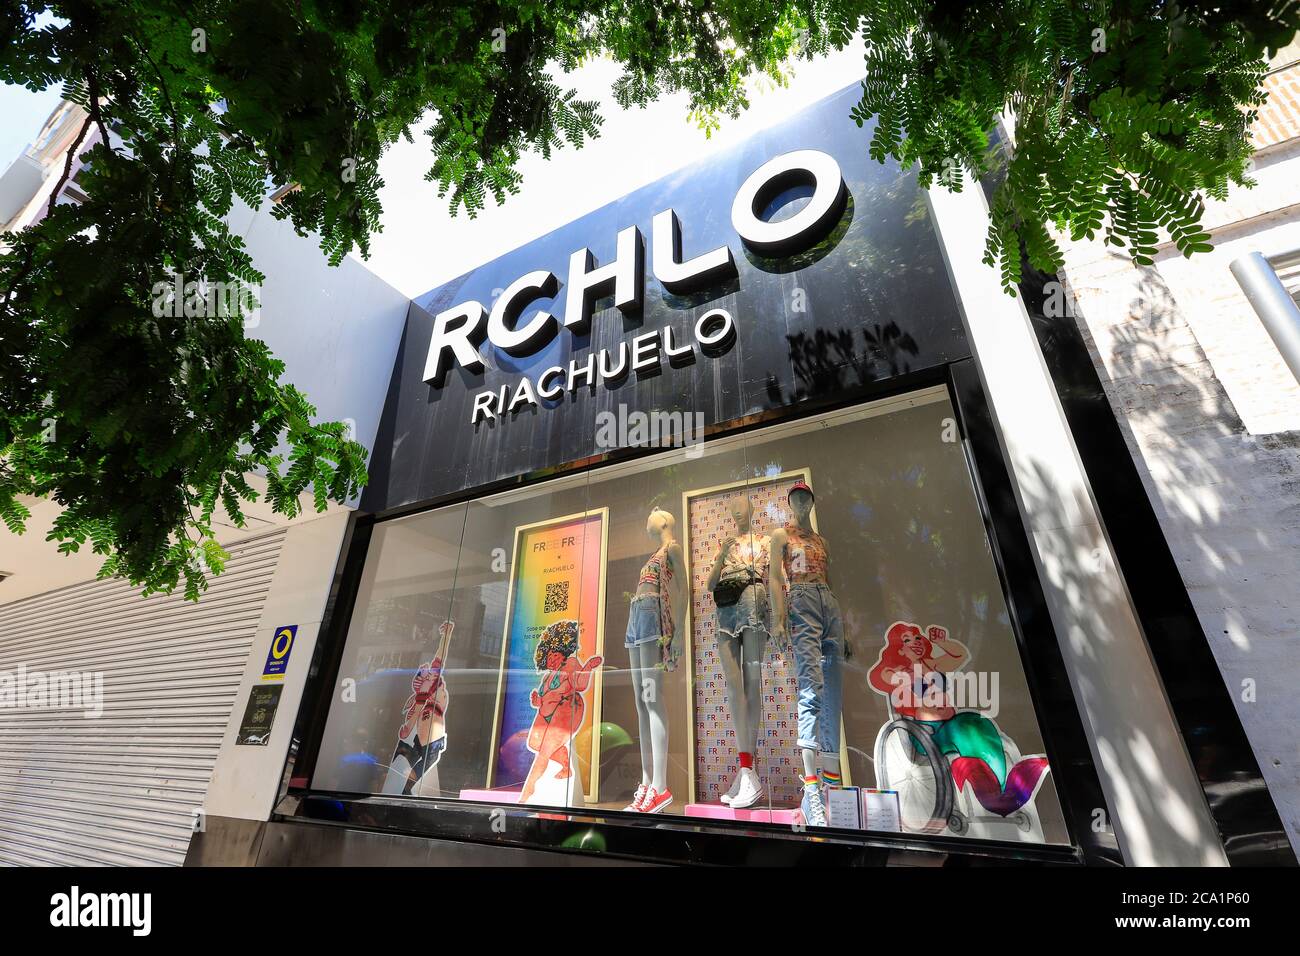 Sao Paulo, Brasilien - 16. feb 2020 - Nahaufnahme des Logos und Schriftzüge des Einzelhandelsladens Riachuelo an der Fassade der Paulista Avenue. Auf B3 gelistetes Unternehmen, Stockfoto